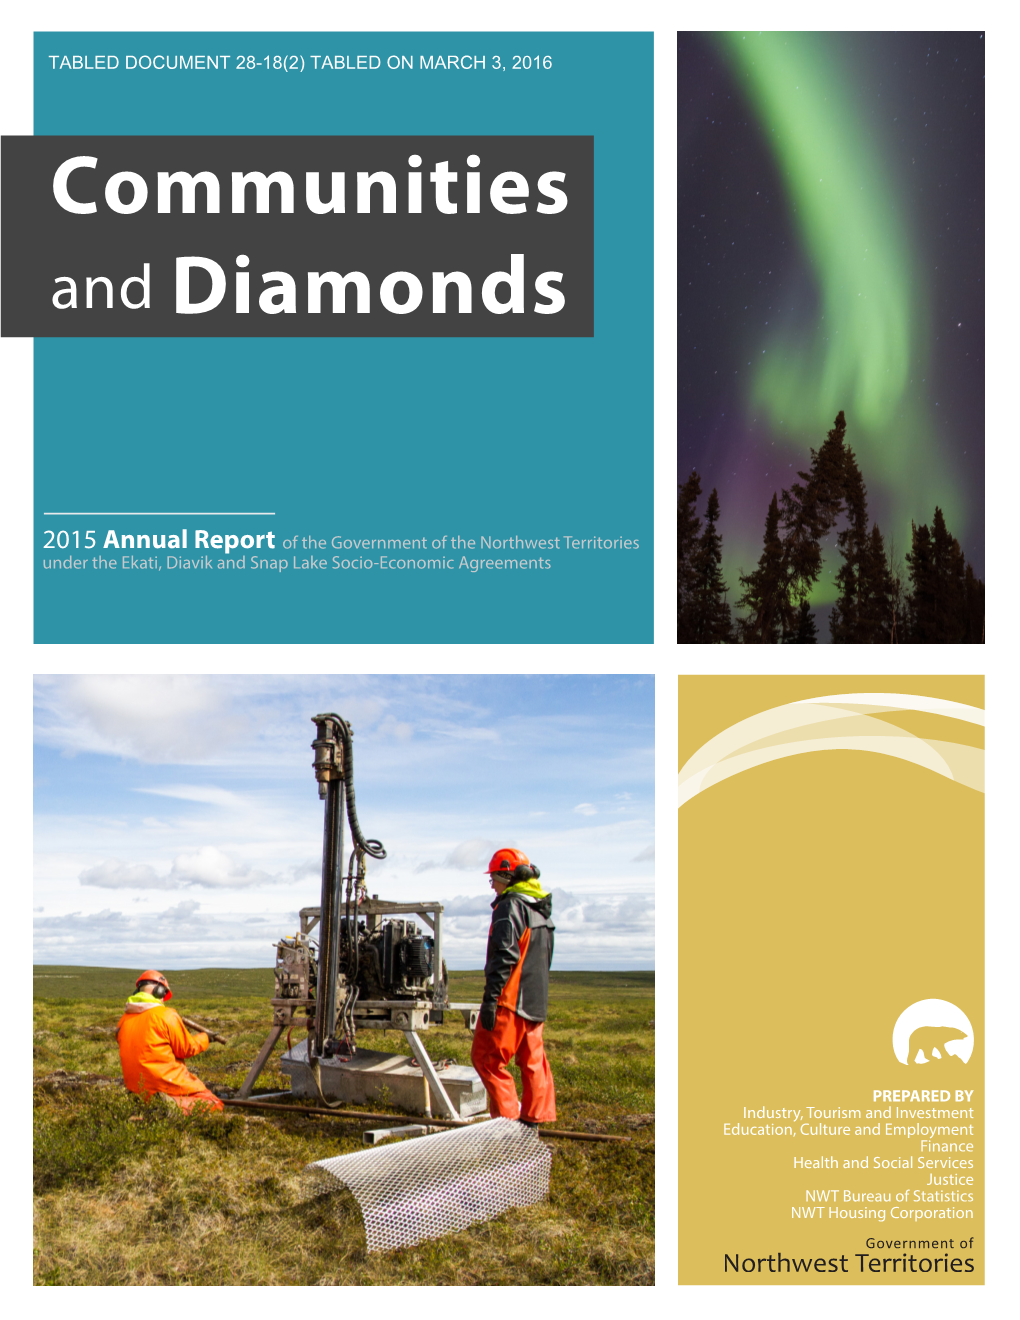 Communities and Diamonds